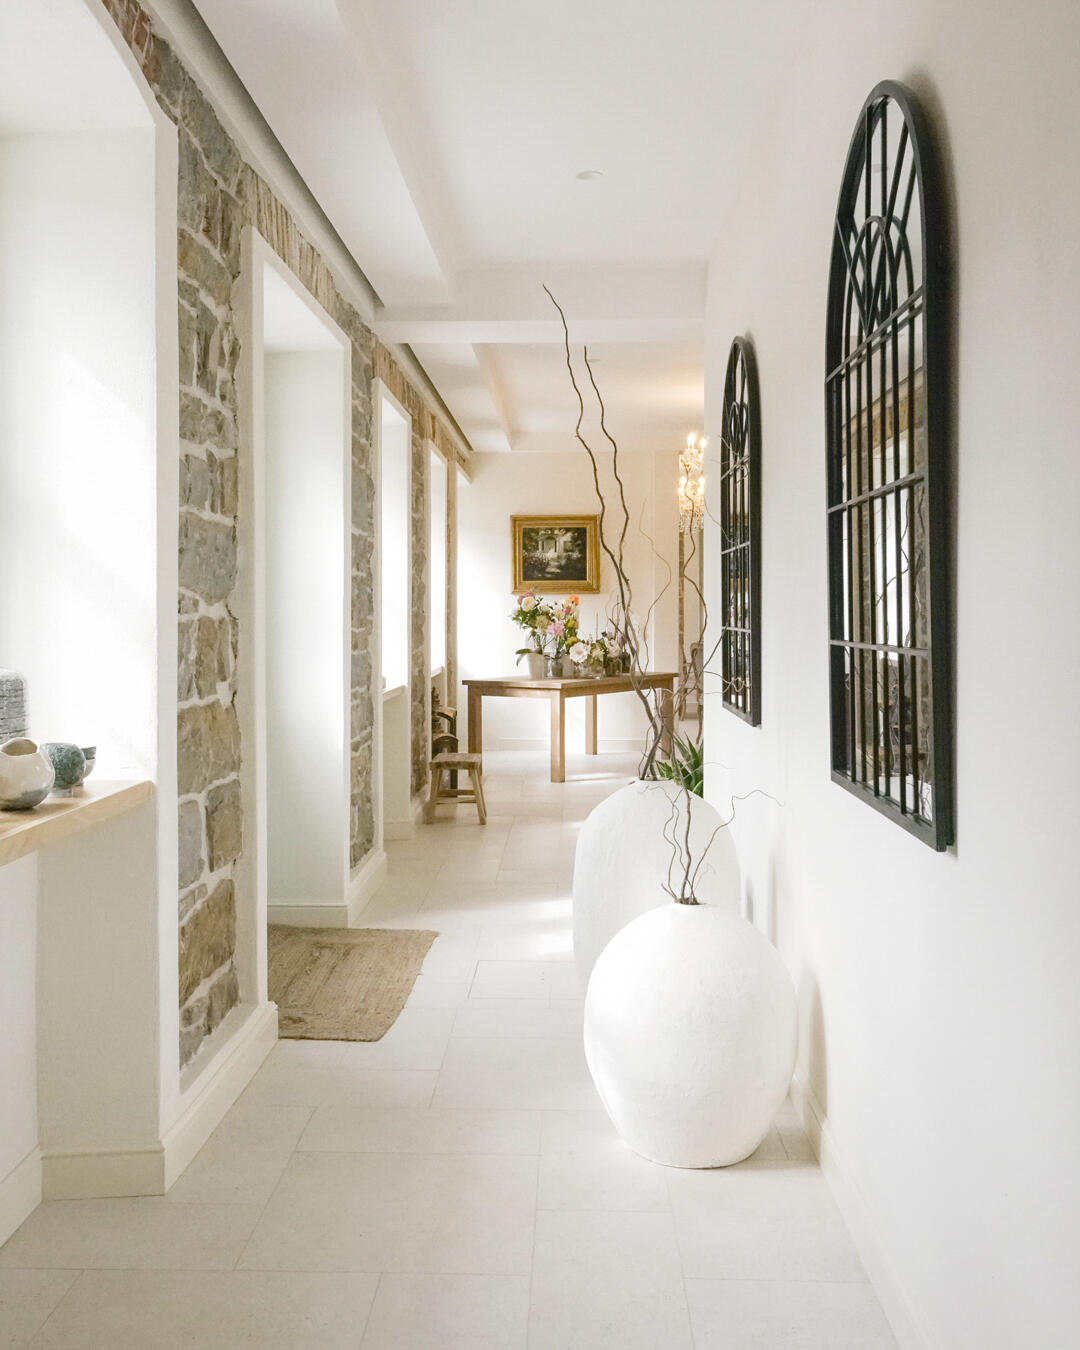 Hausgang im rustikalen Design in weiß, braunen Farben in der Villa Majda